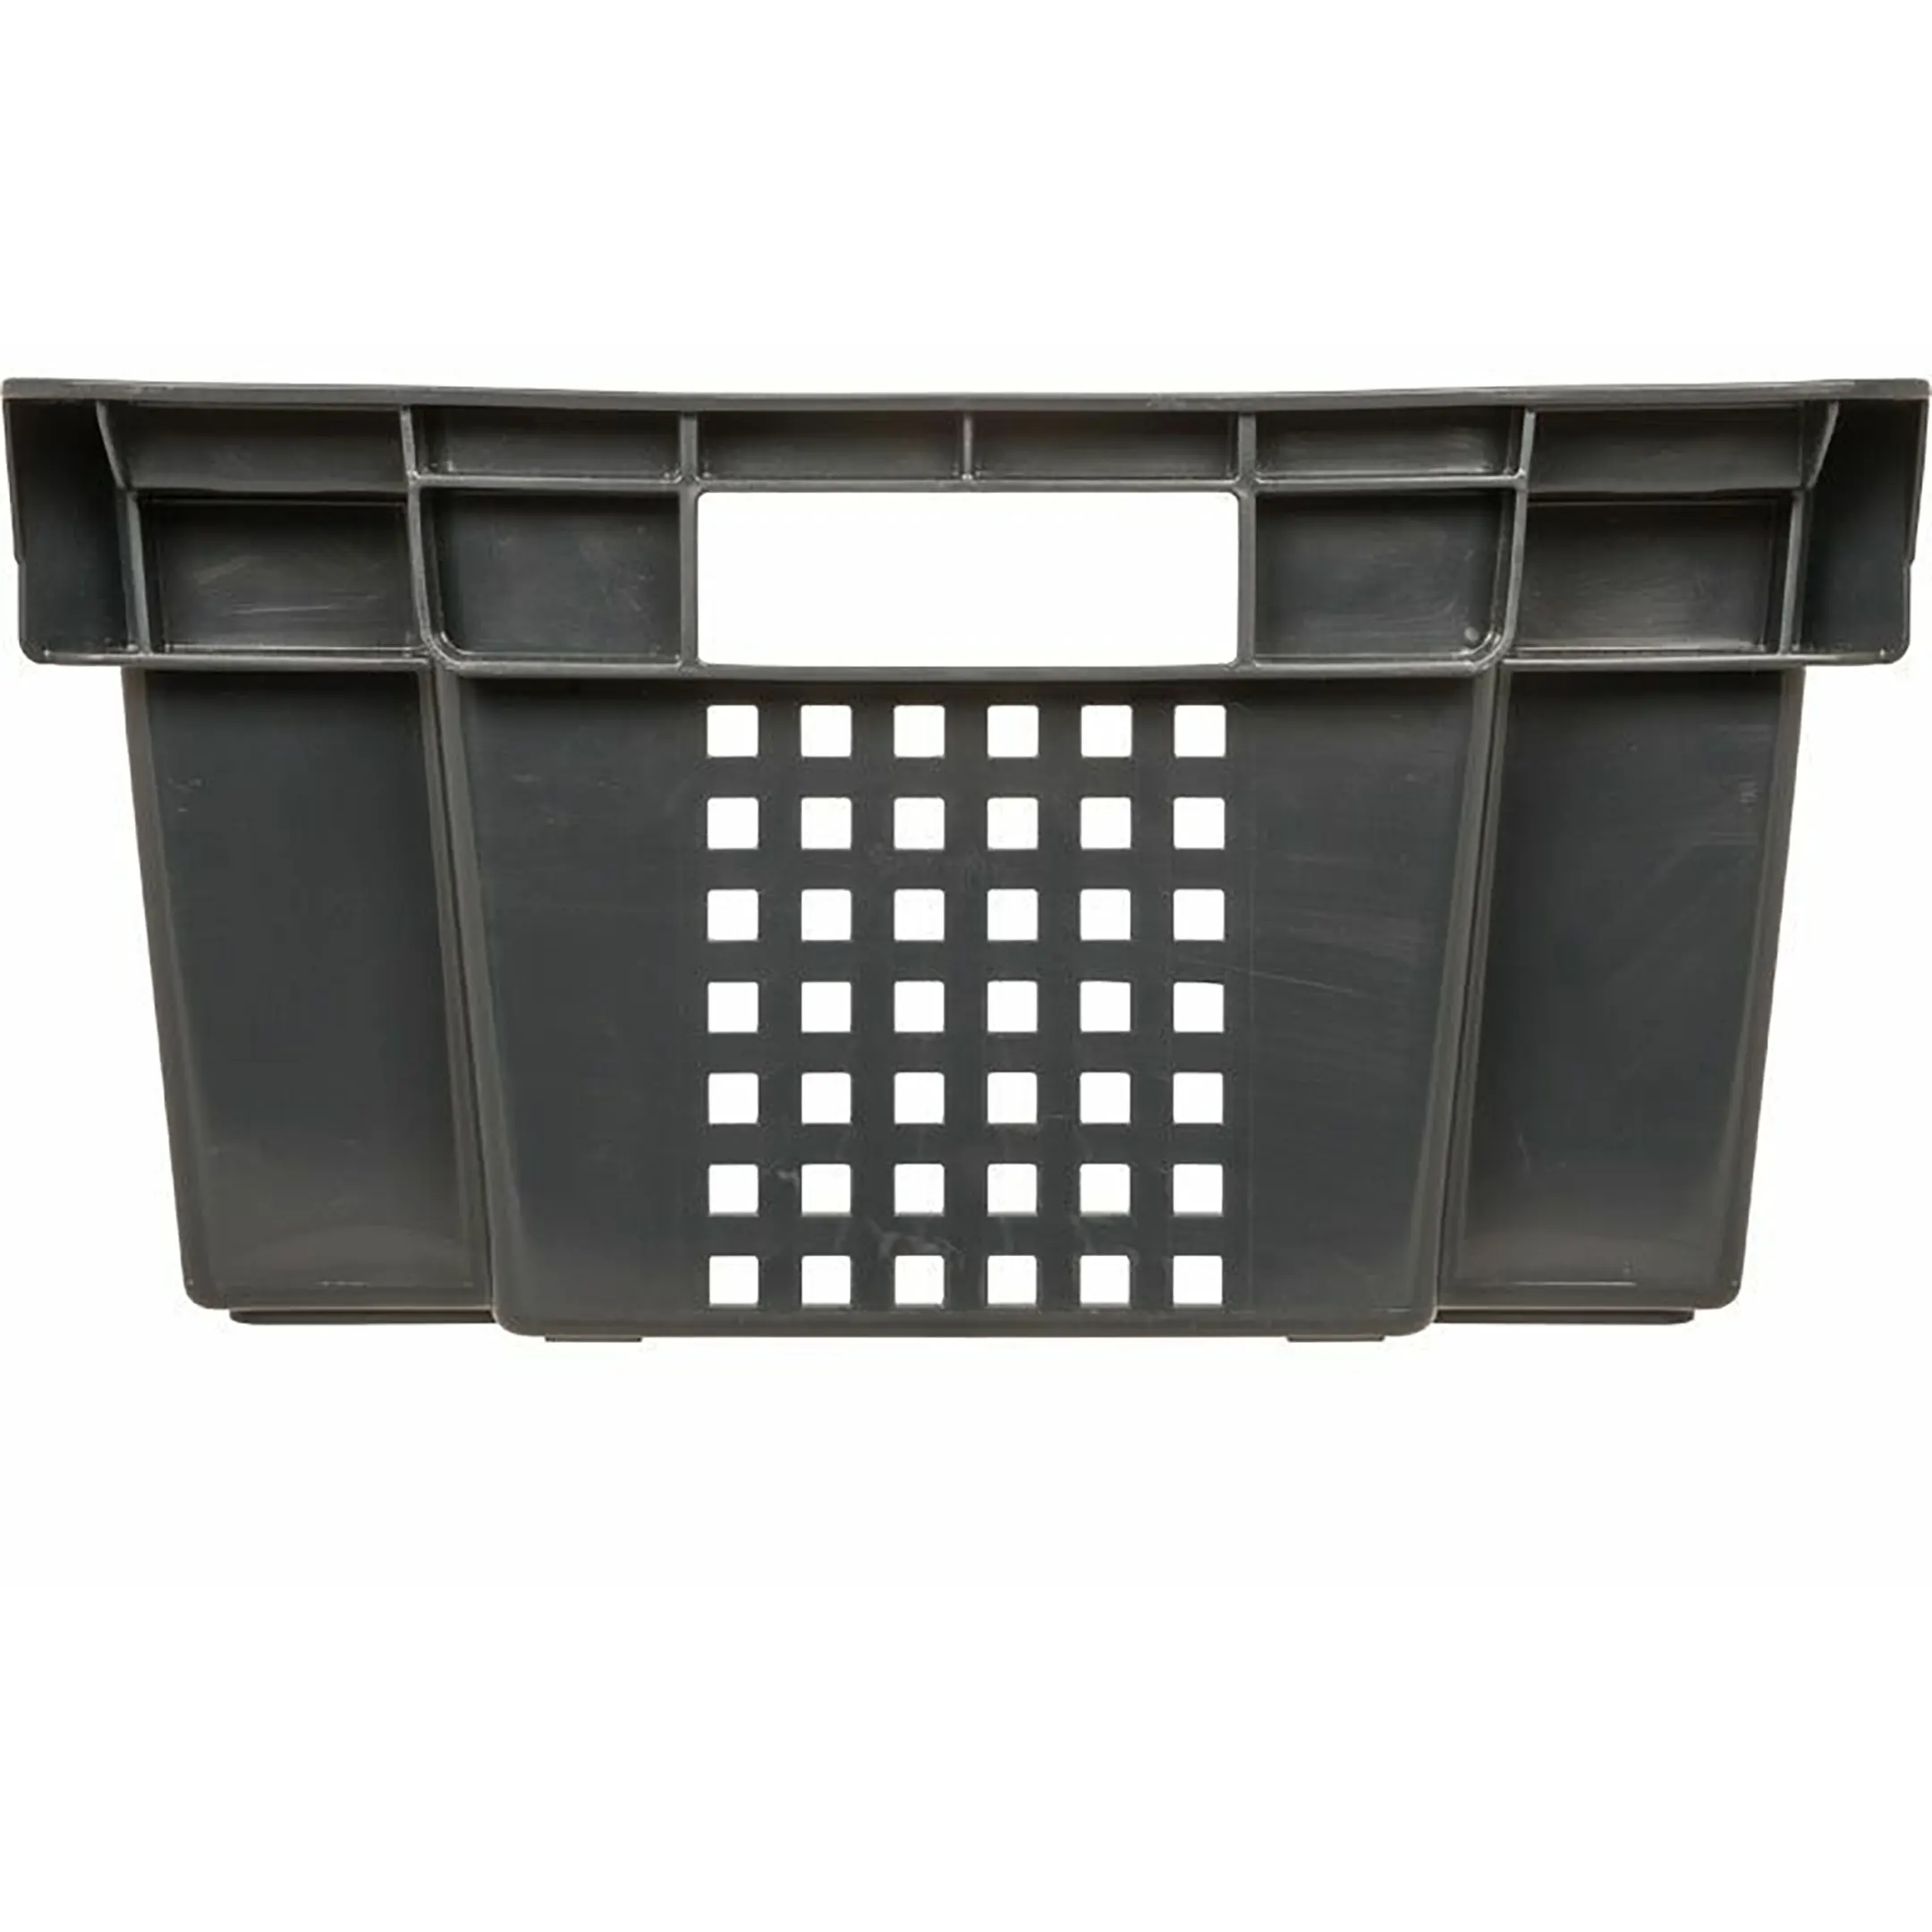 Ящик п/э 600х400х200 1,5 кг дно сплошное, стенки перфорированные арт. 102-1, без крышки (Чёрный)